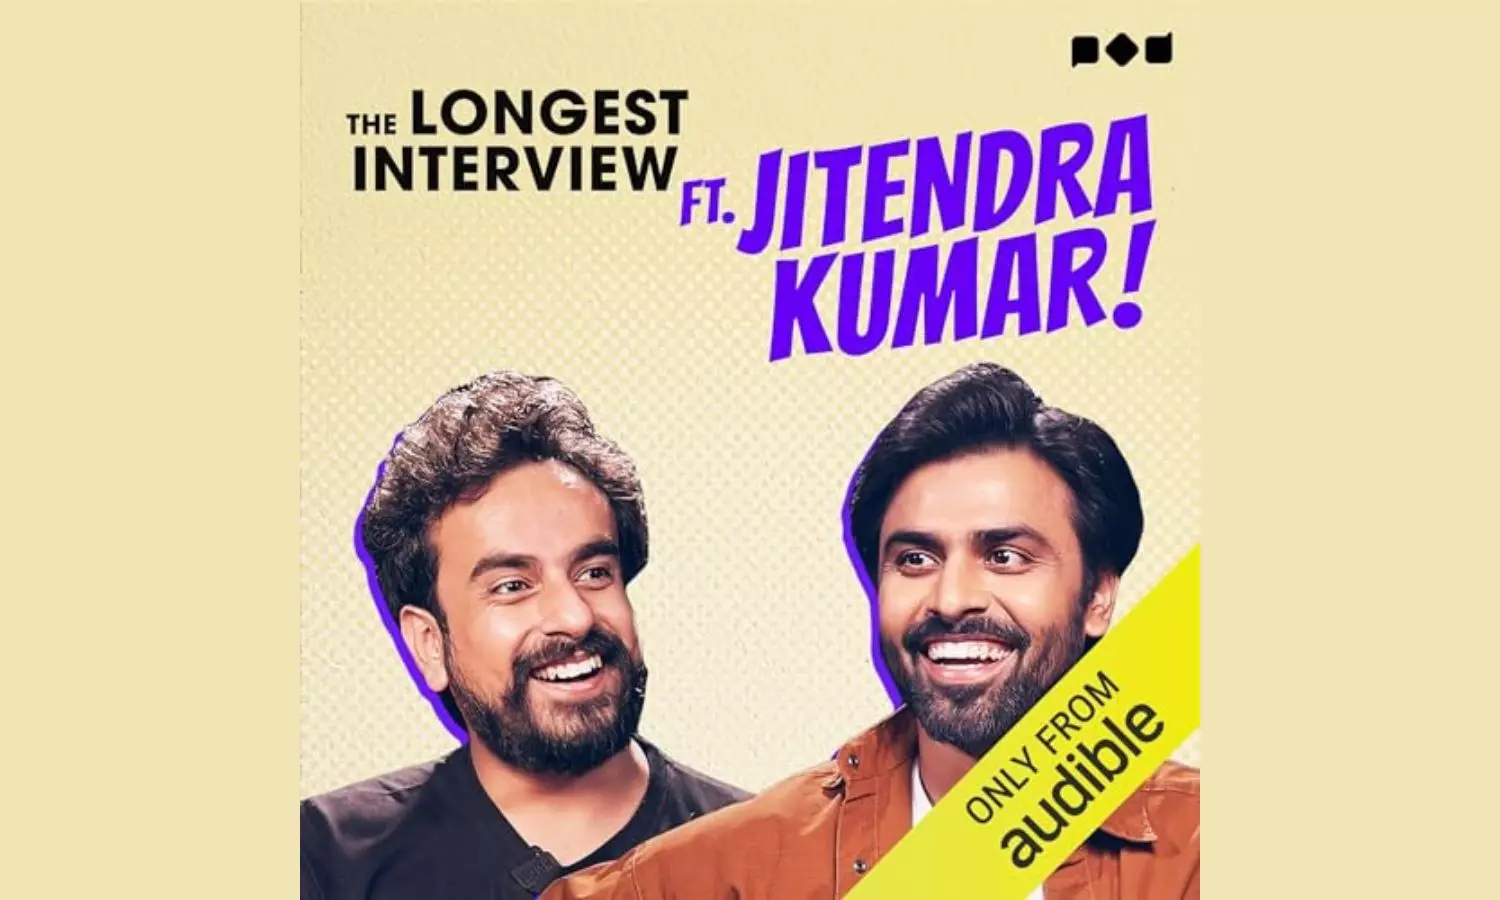 Jitendra Kumar in The Longest Interview on Audible